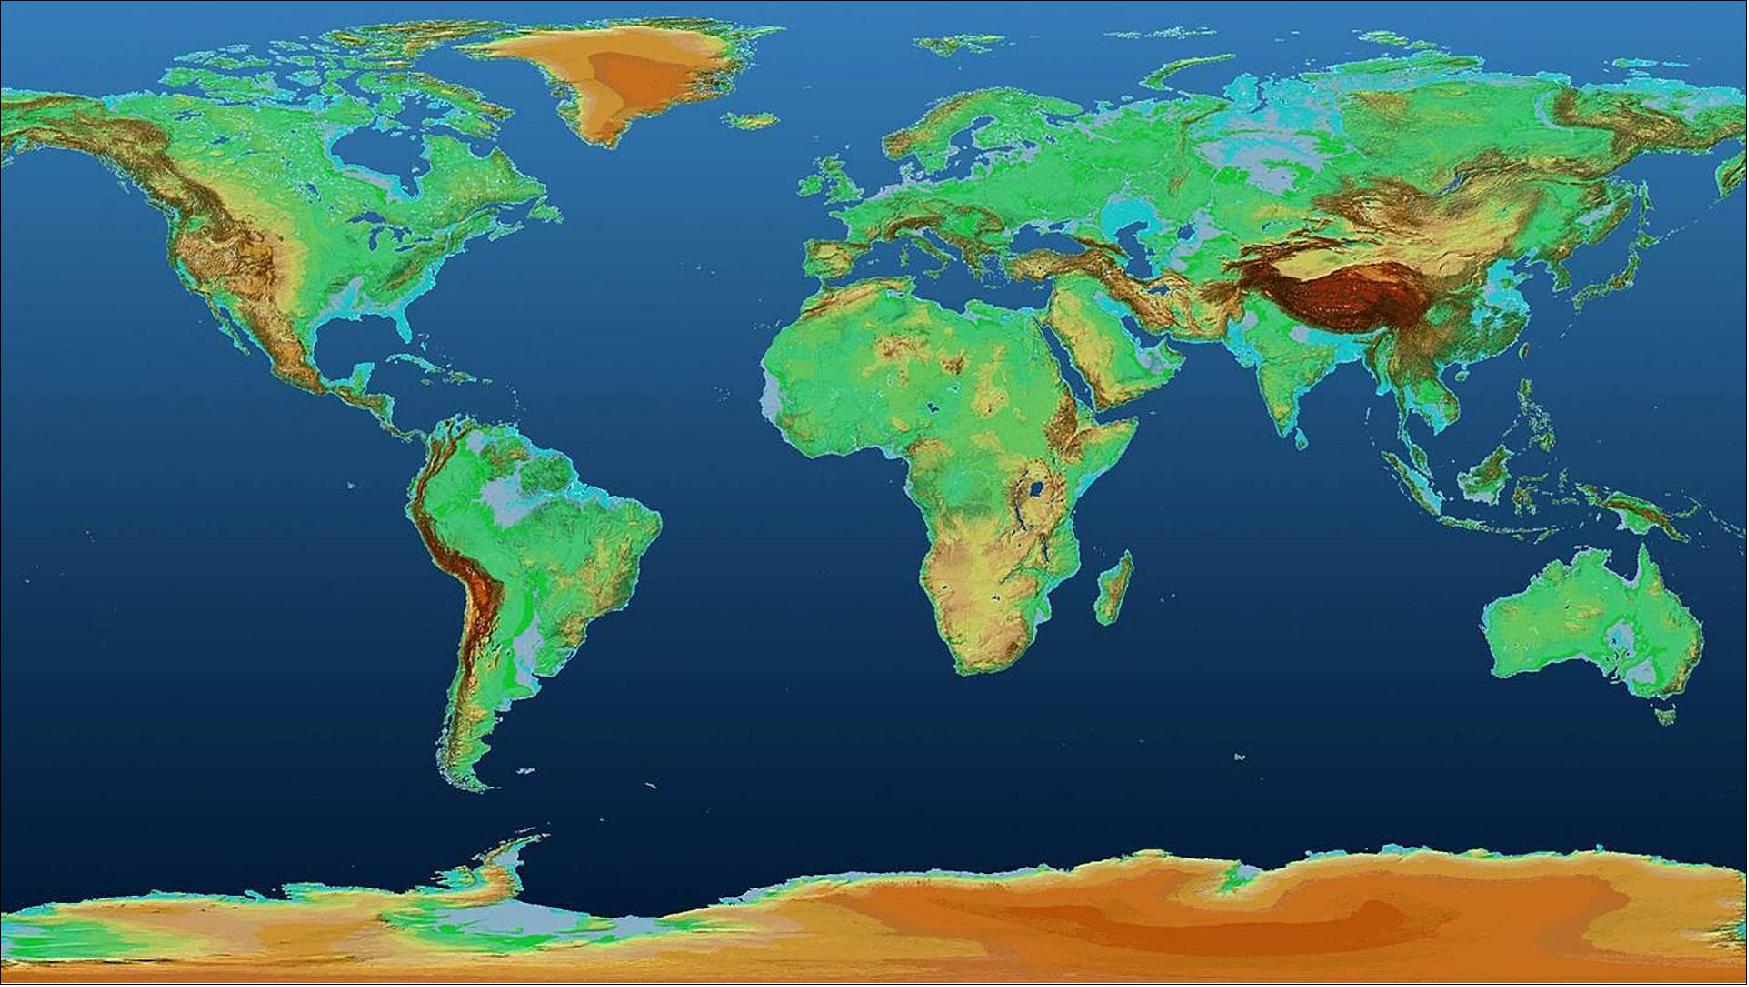 Figure 18: Global TanDEM-X DEM (Digital Elevation Model), image credit: DLR